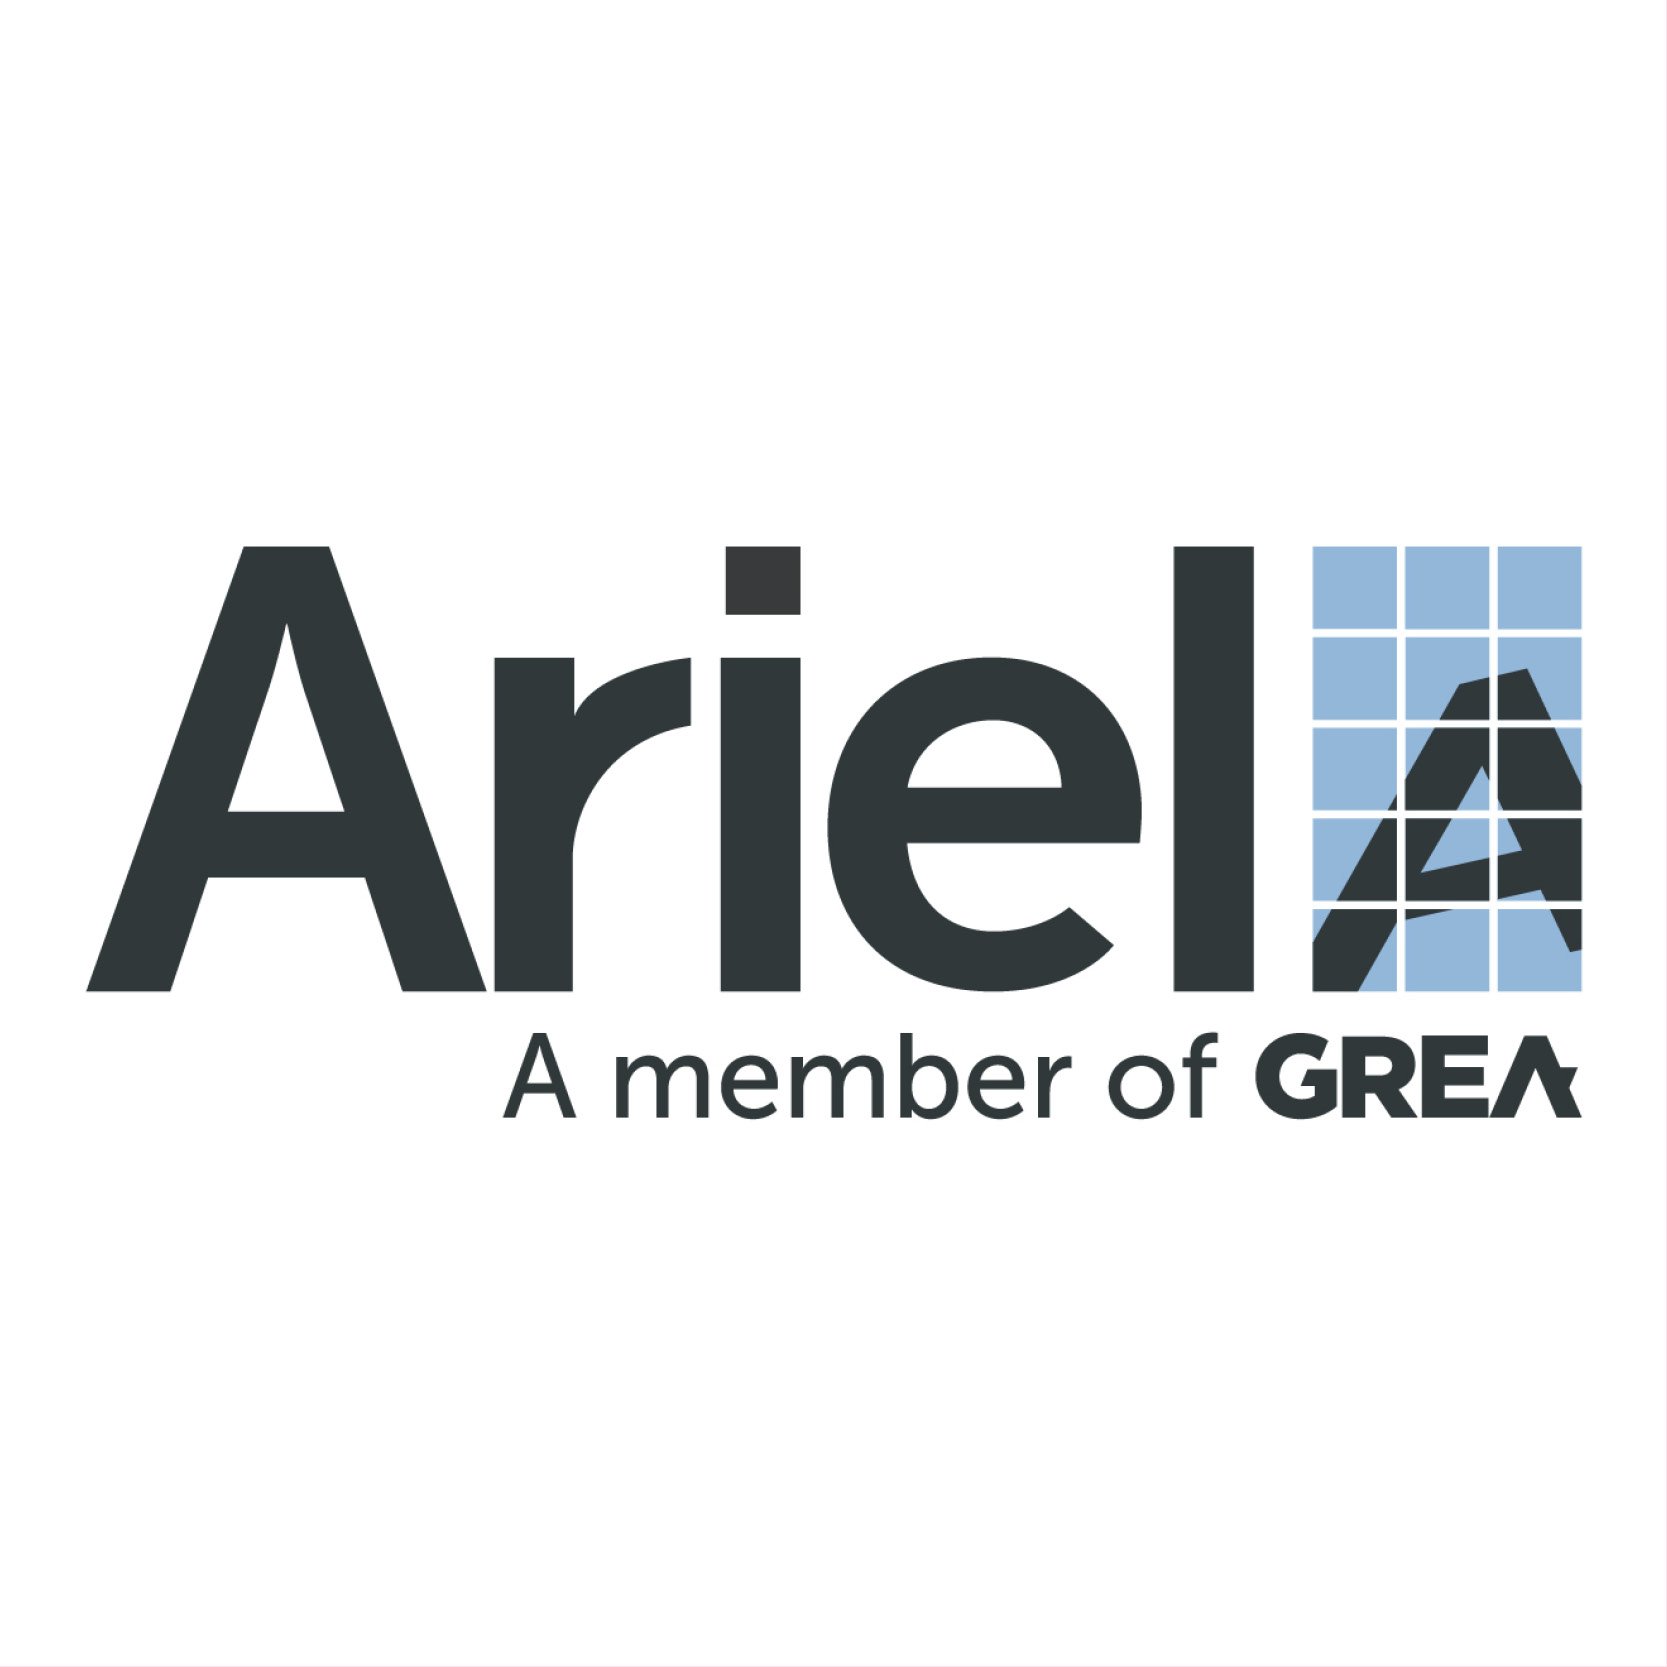 Ariel Property Advisors